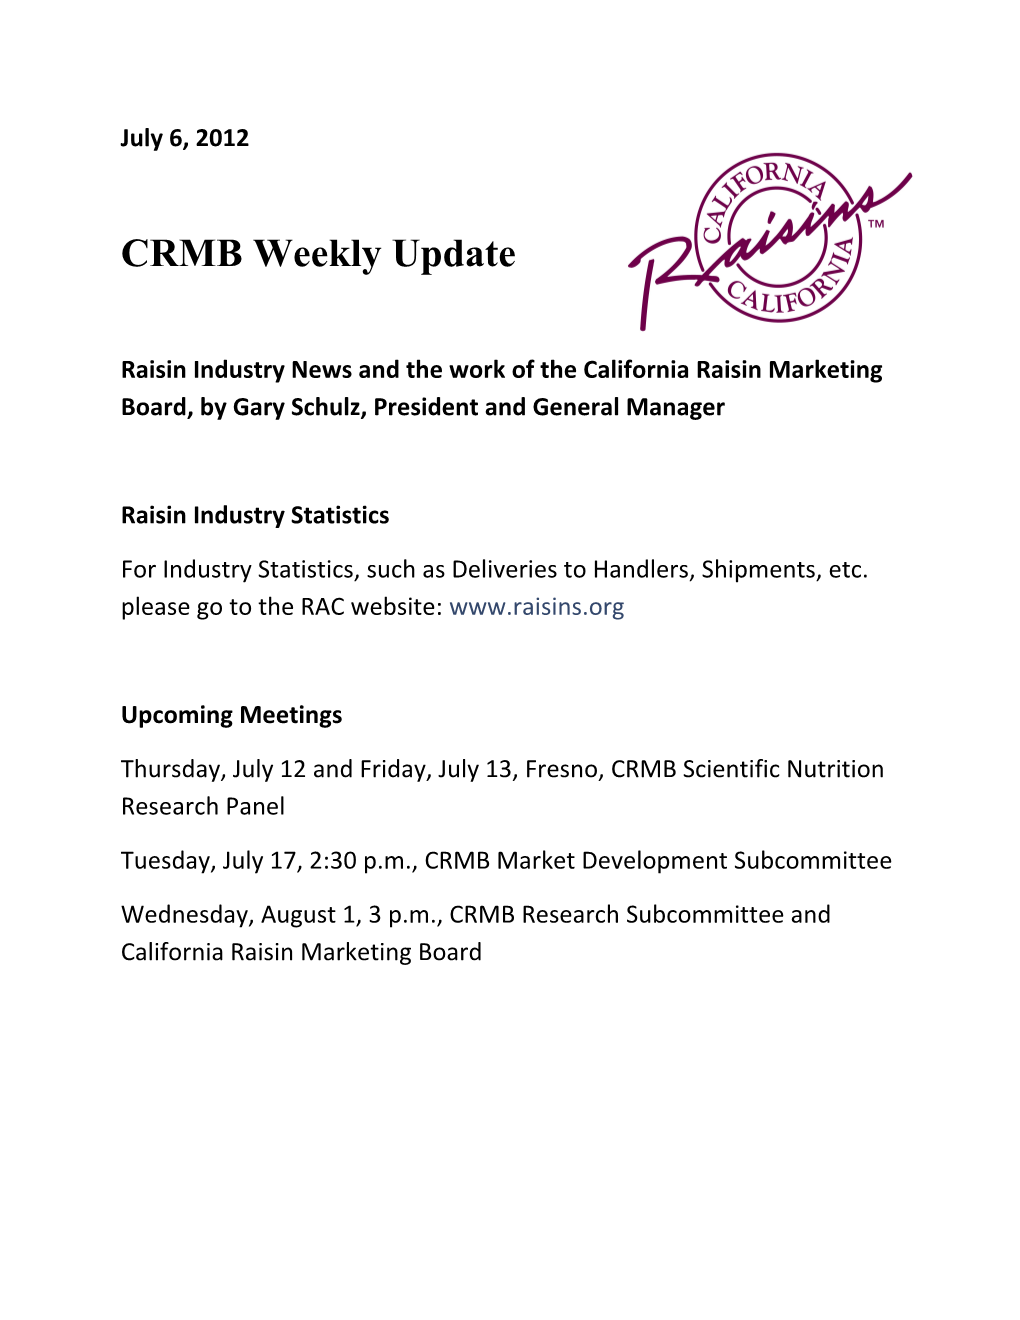 CRMB Weekly Update